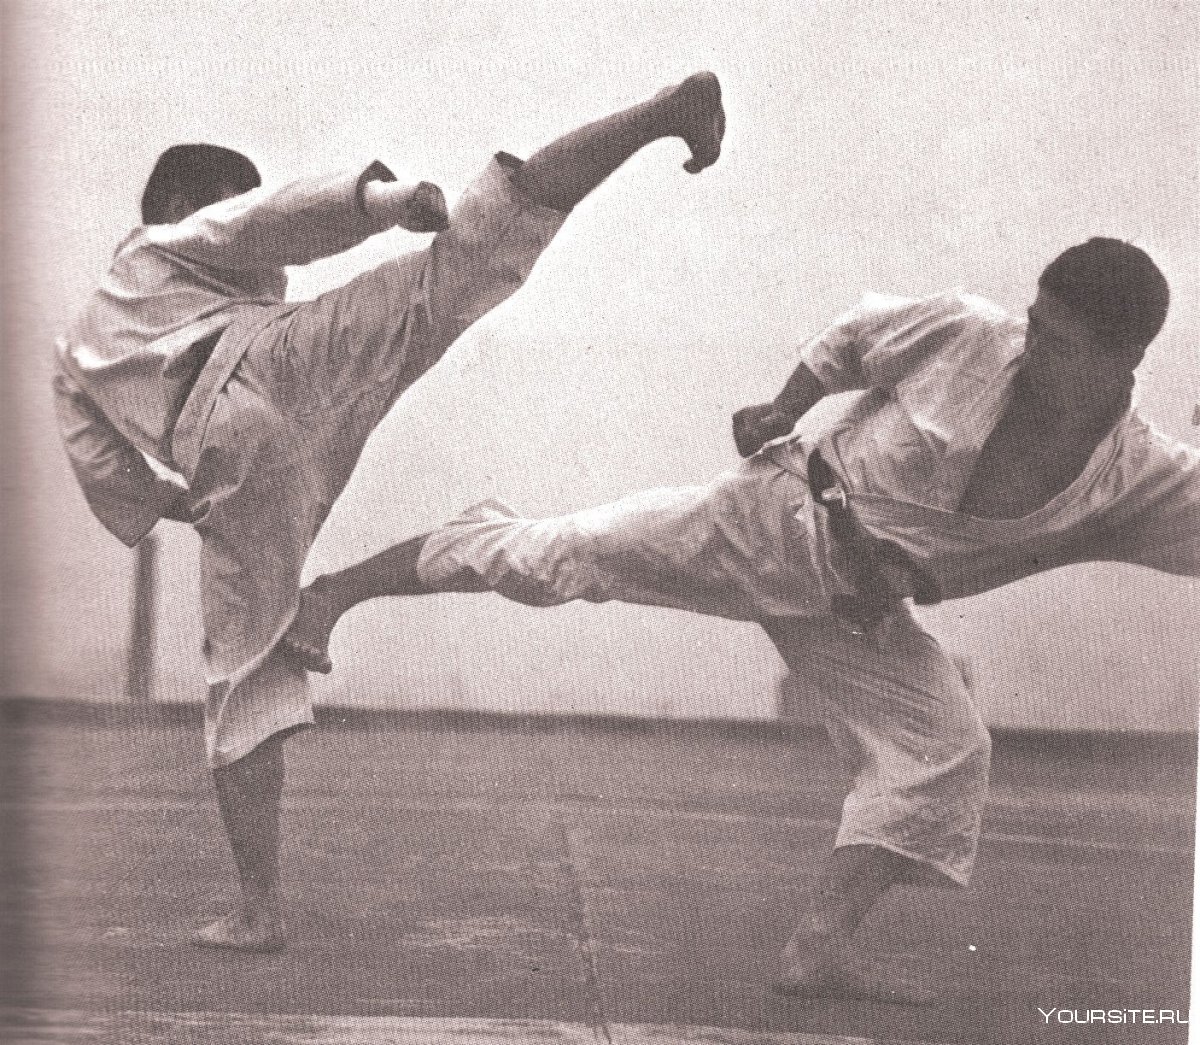 Okinawa Karate